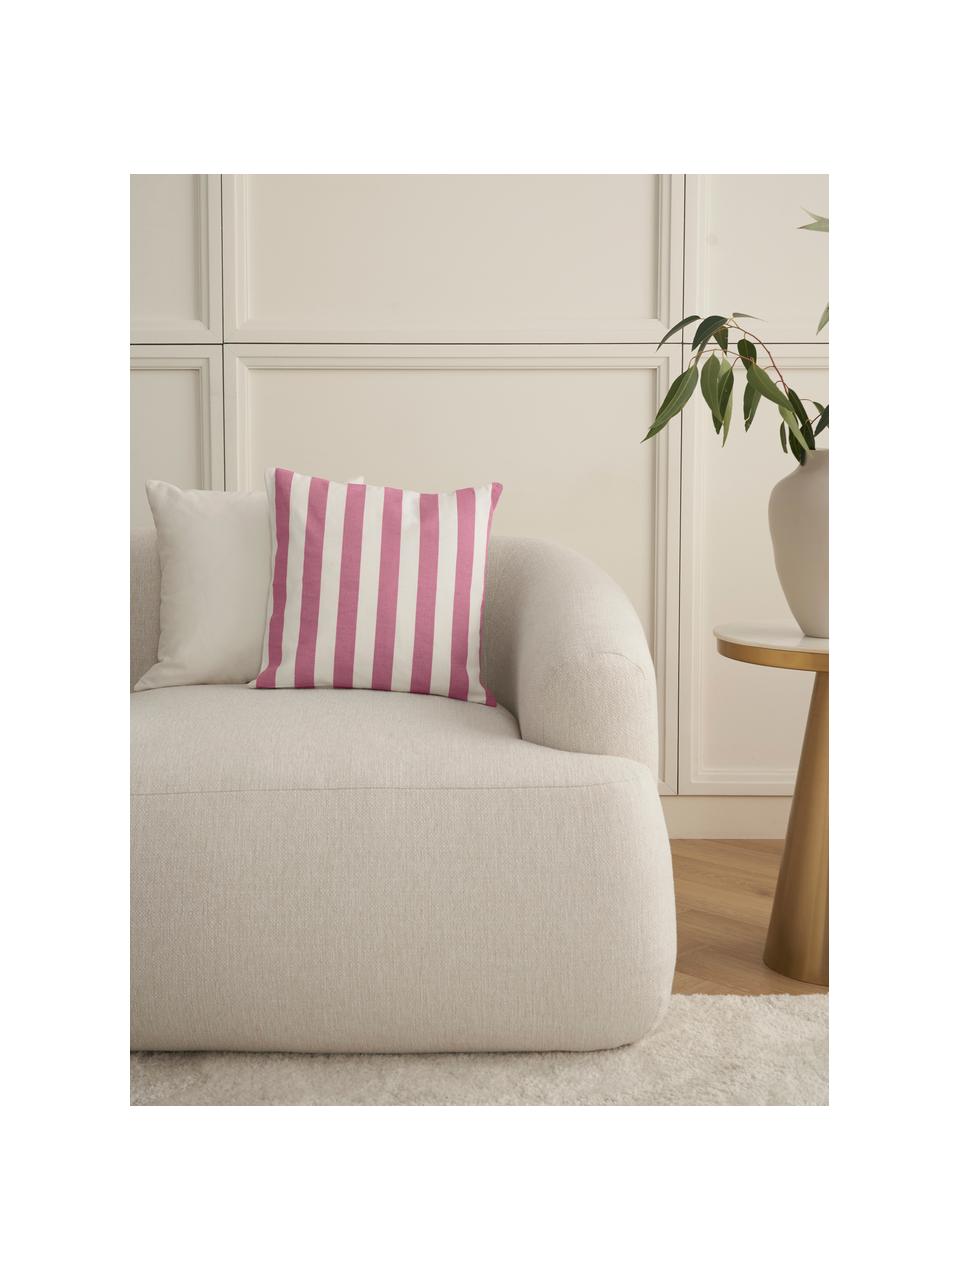 Gestreepte kussenhoes Timon in roze/wit, 100% katoen, Roze, wit, B 40 x L 40 cm